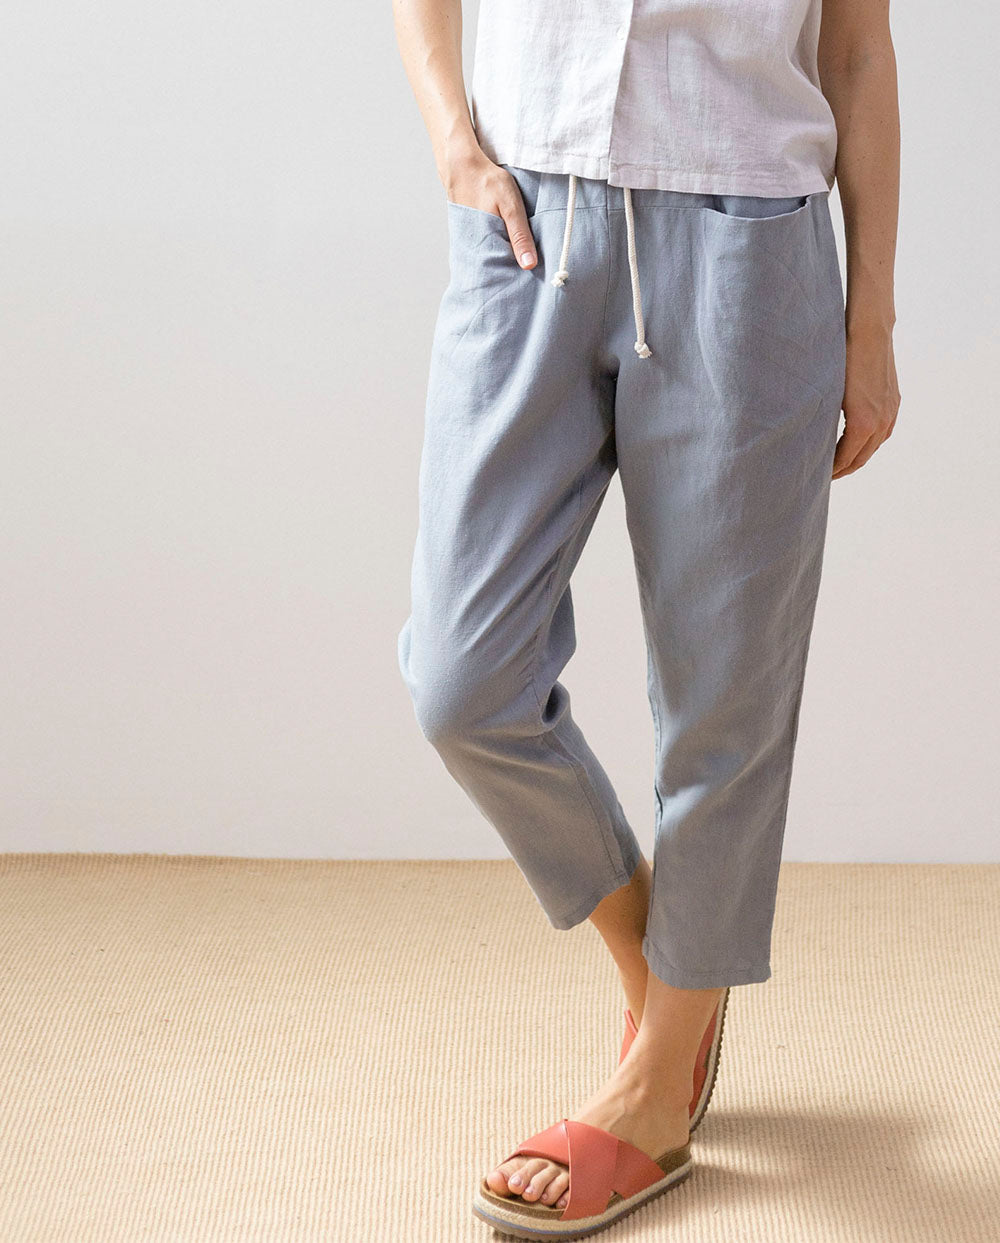 Pantalón gris azulado 2144 PAN Producto Básico